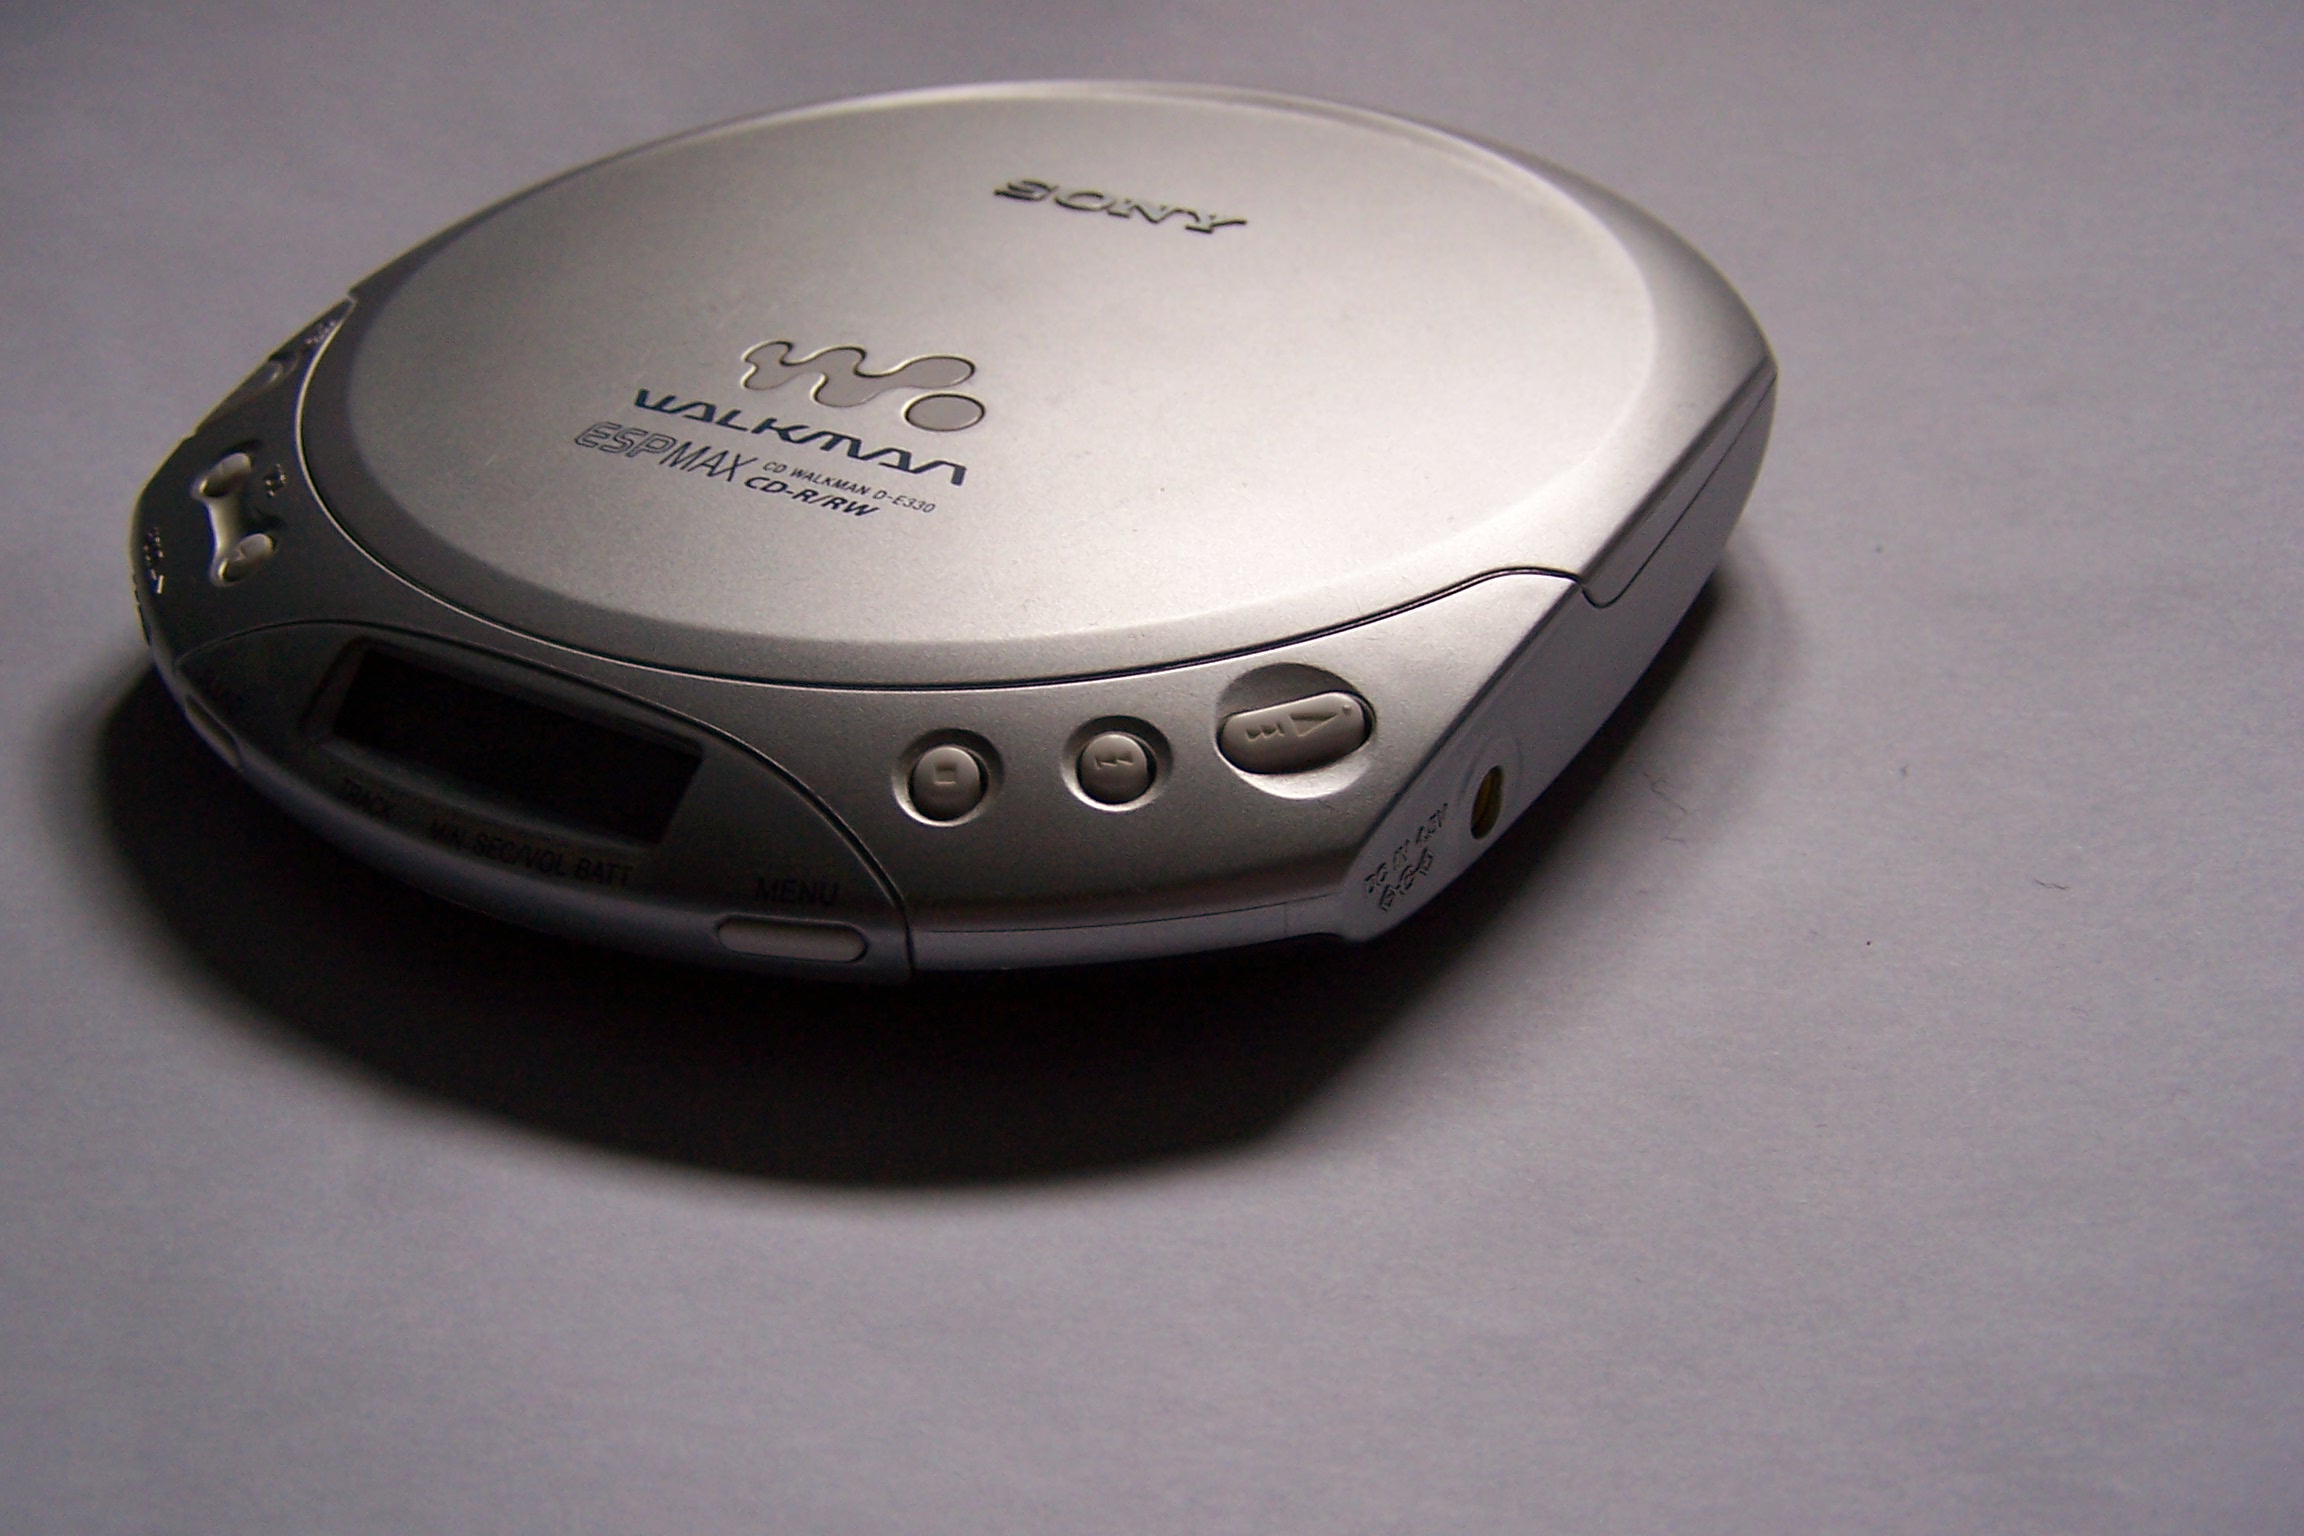 File:Sony CD Walkman D-E330.jpg - Wikimedia Commons